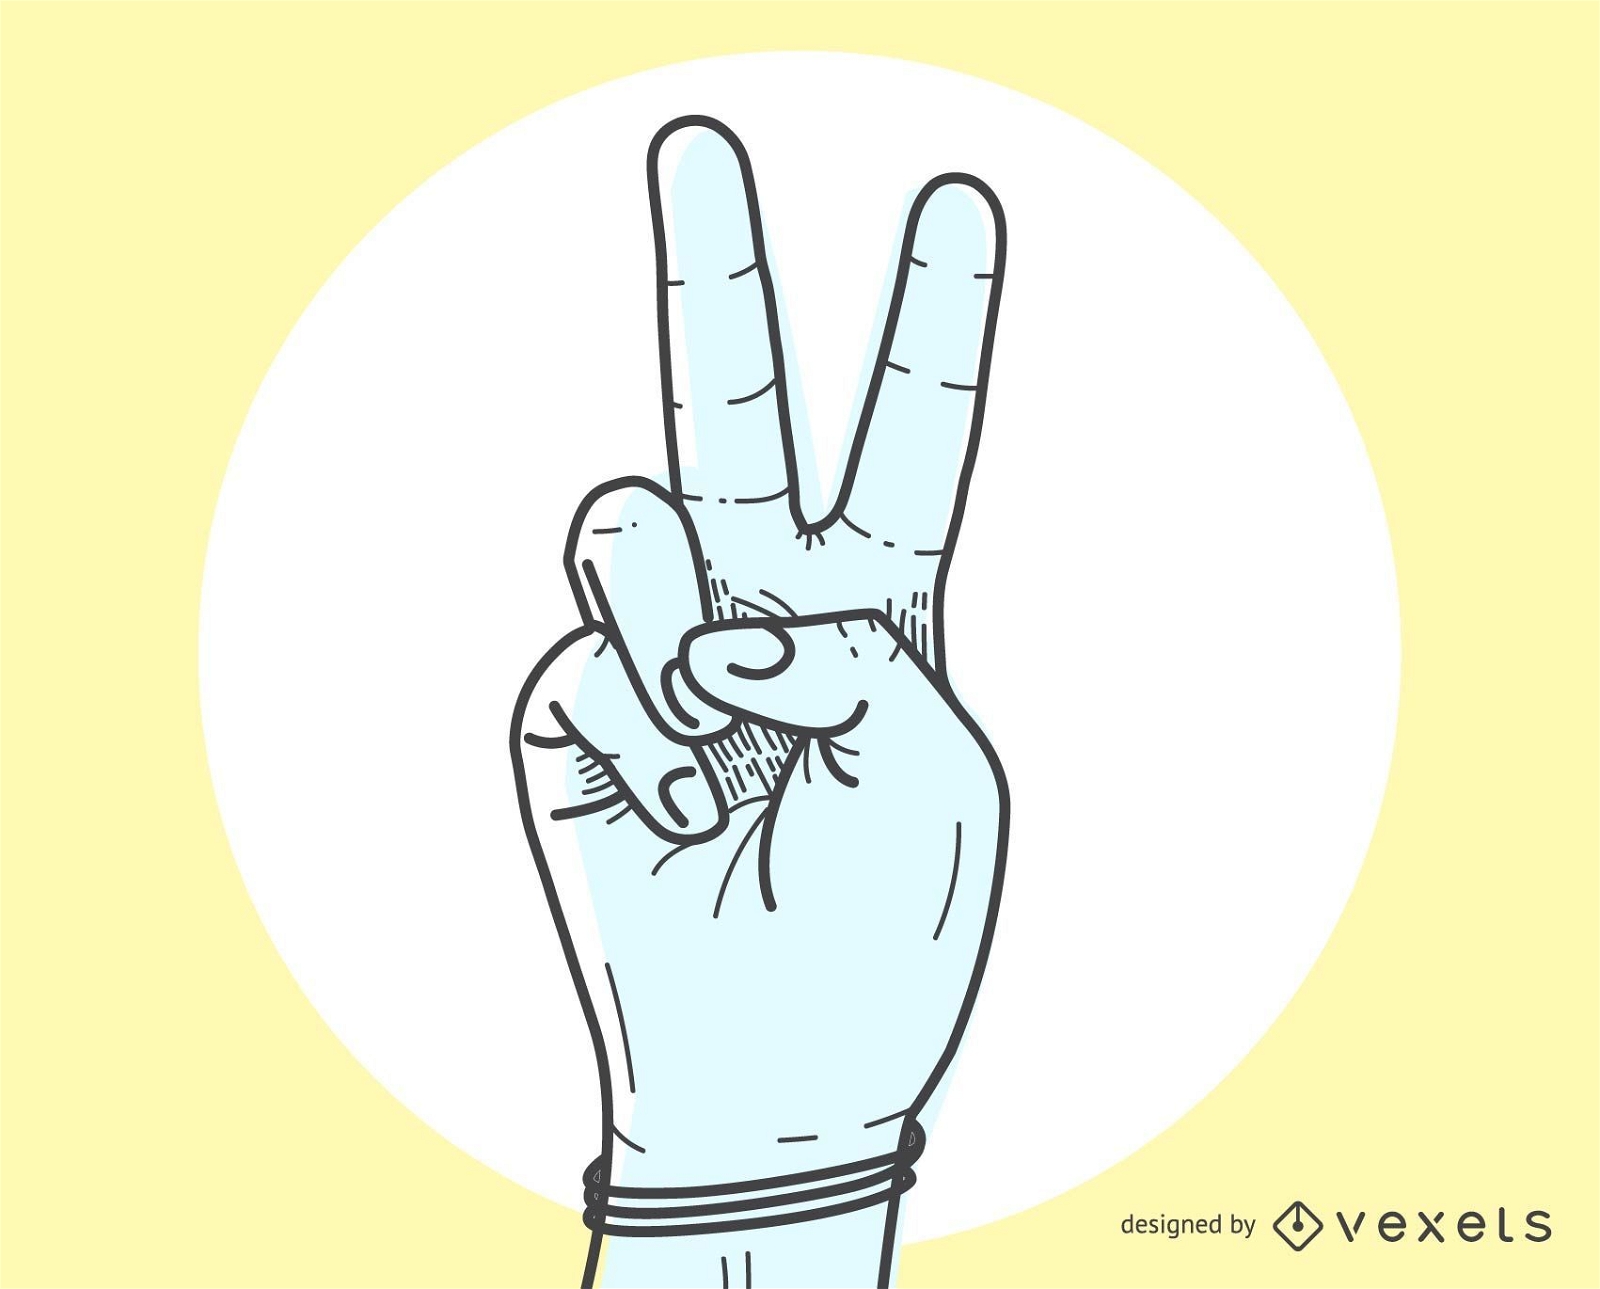 El signo de la paz V por gesto de mano